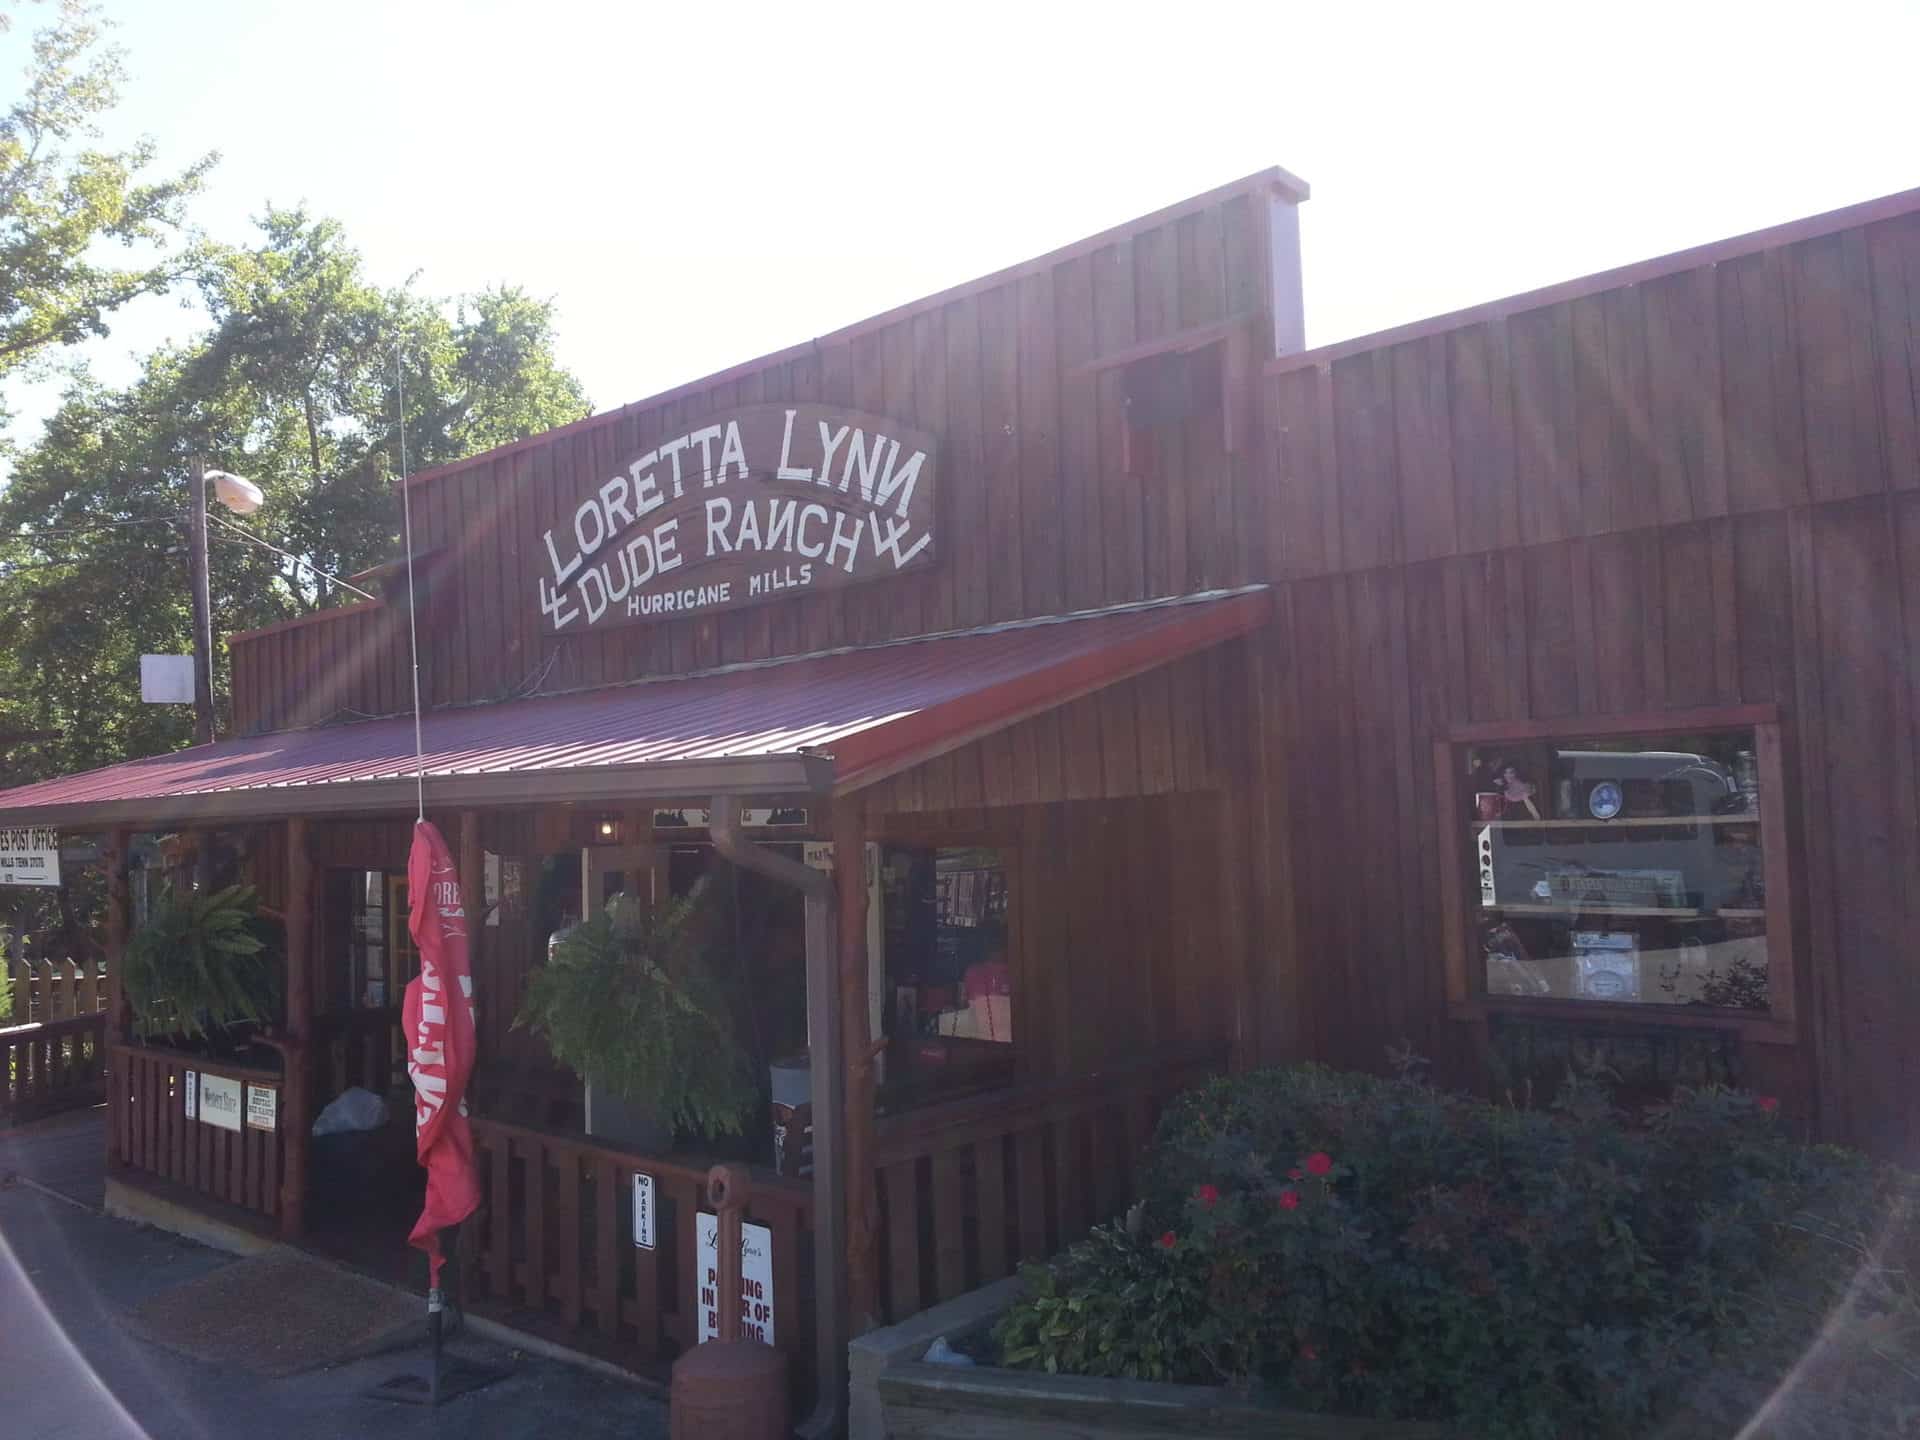 loretta lynn's ranch's main building